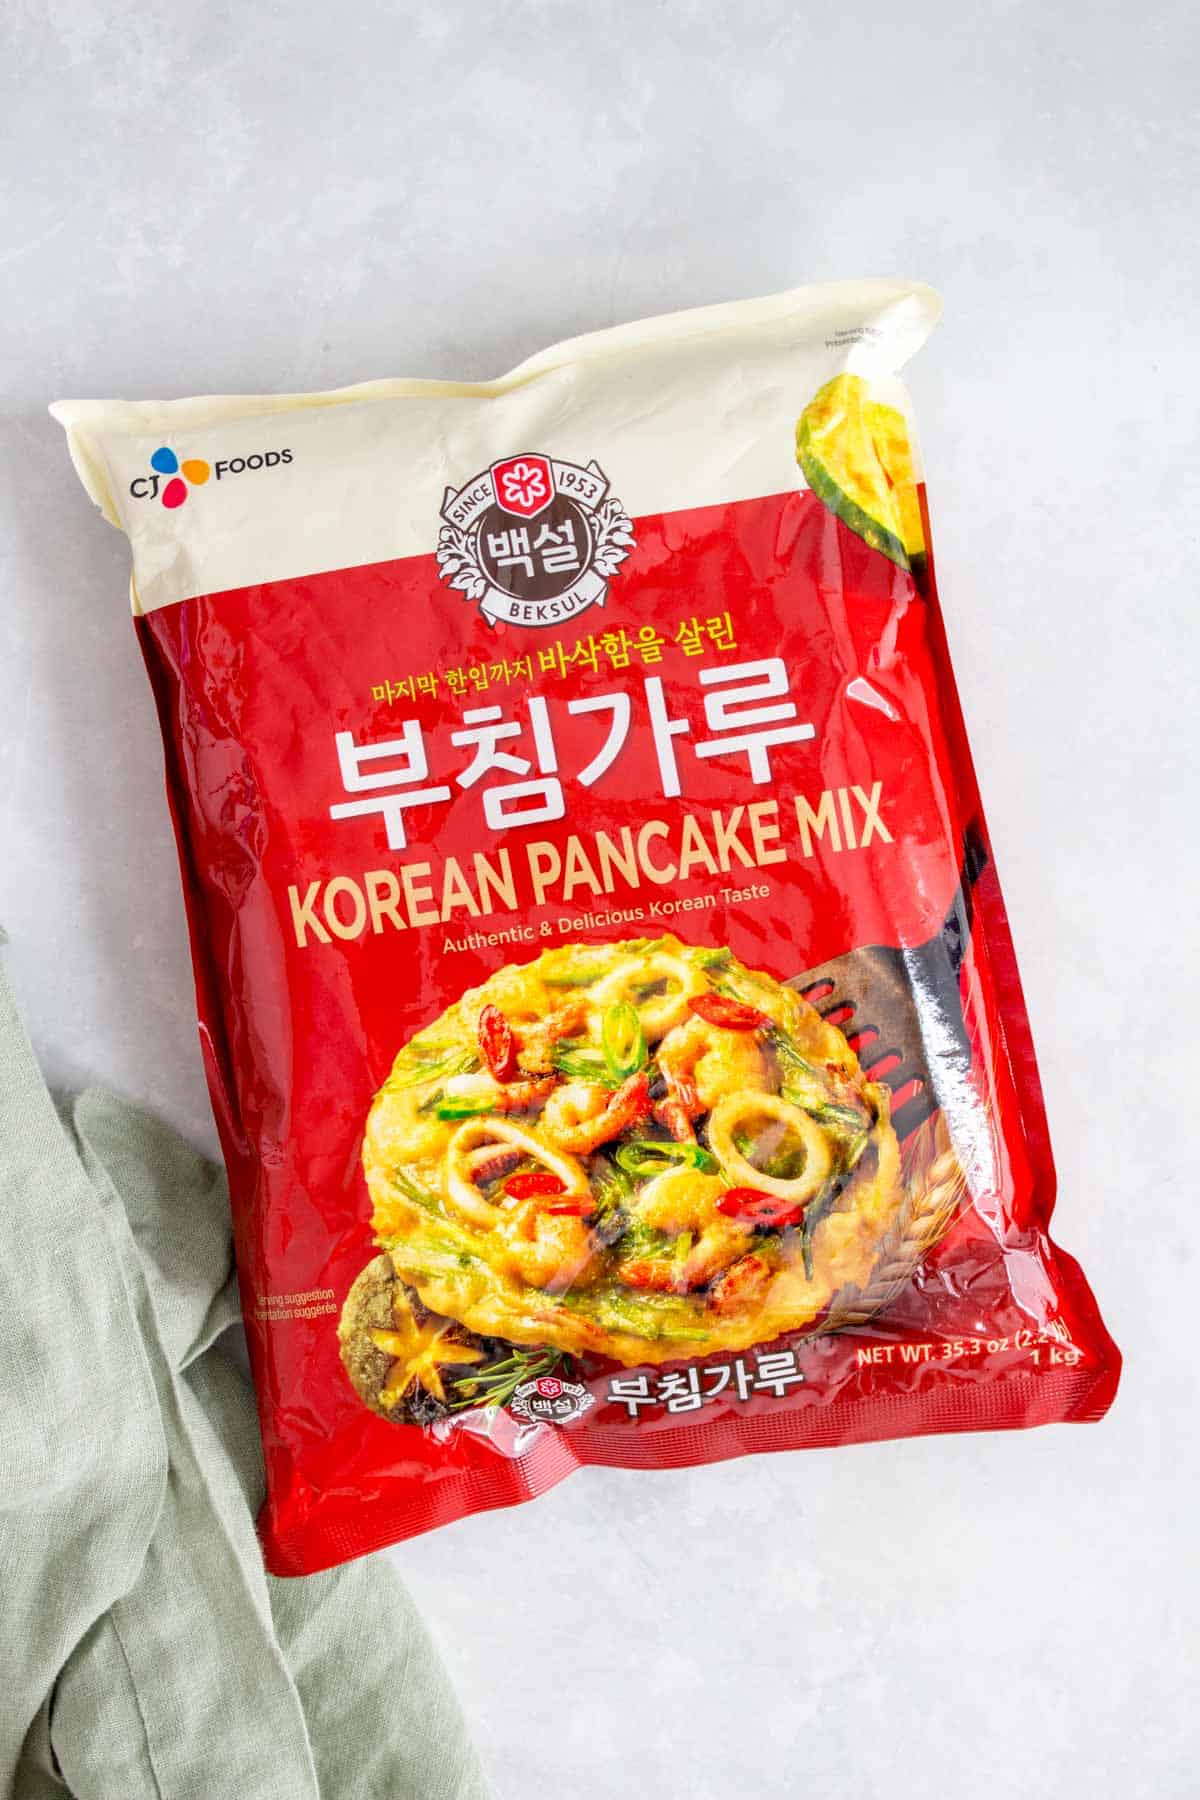 Korean pancake mix.